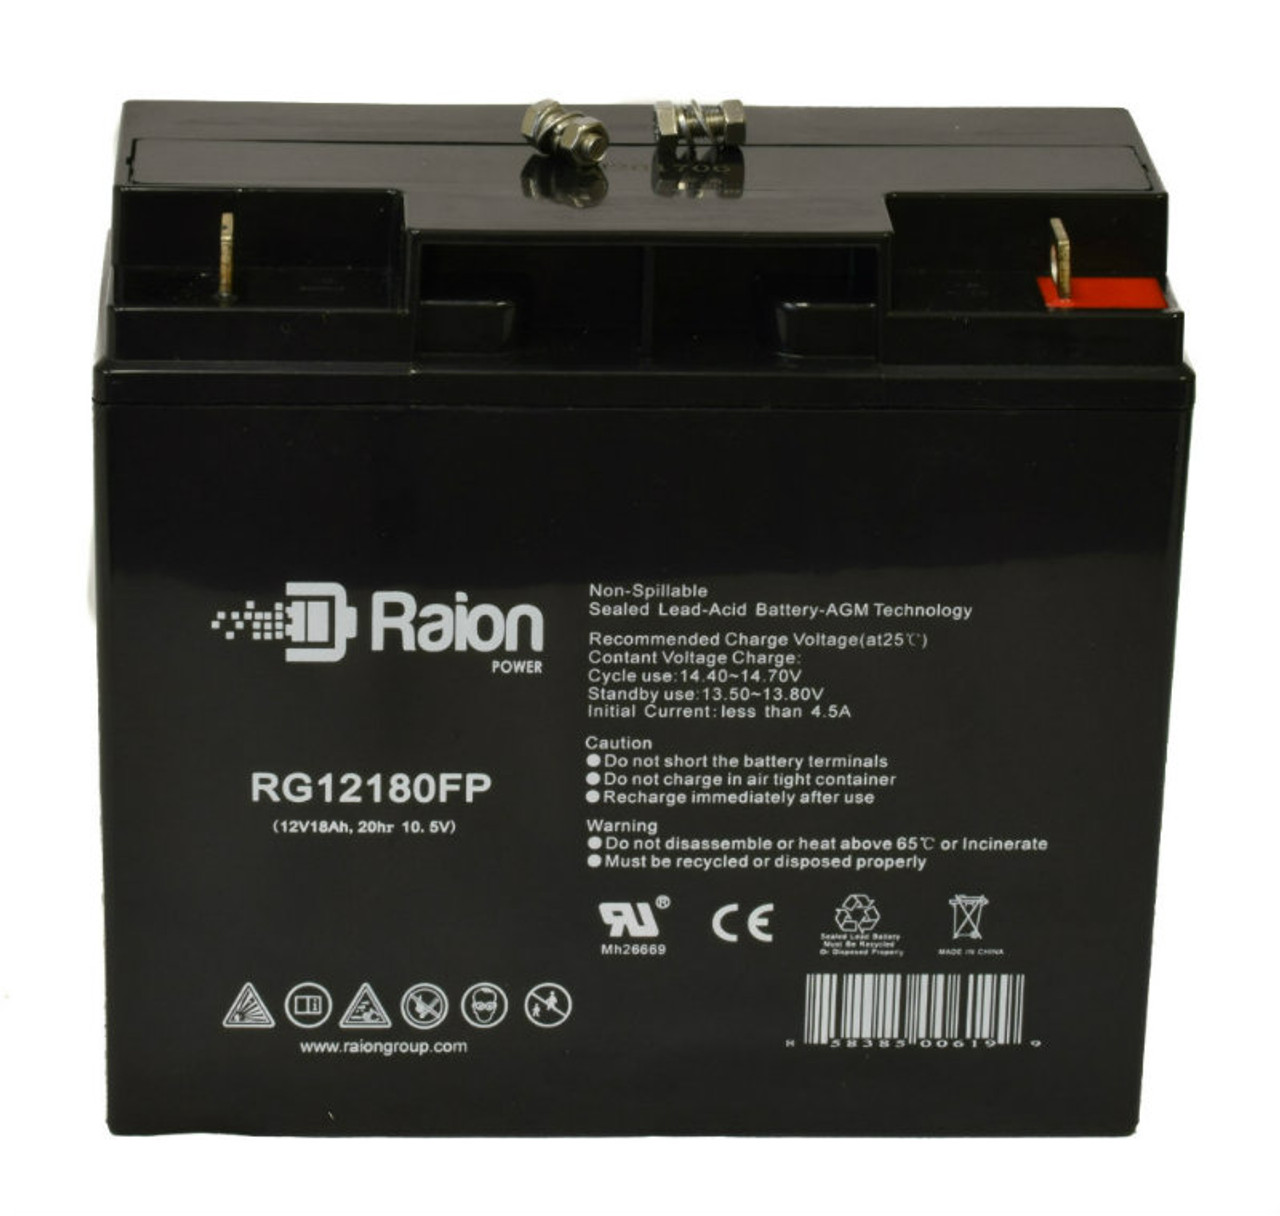 Raion Power RG12180FP 12V 18Ah Lead Acid Battery for AJC D18S